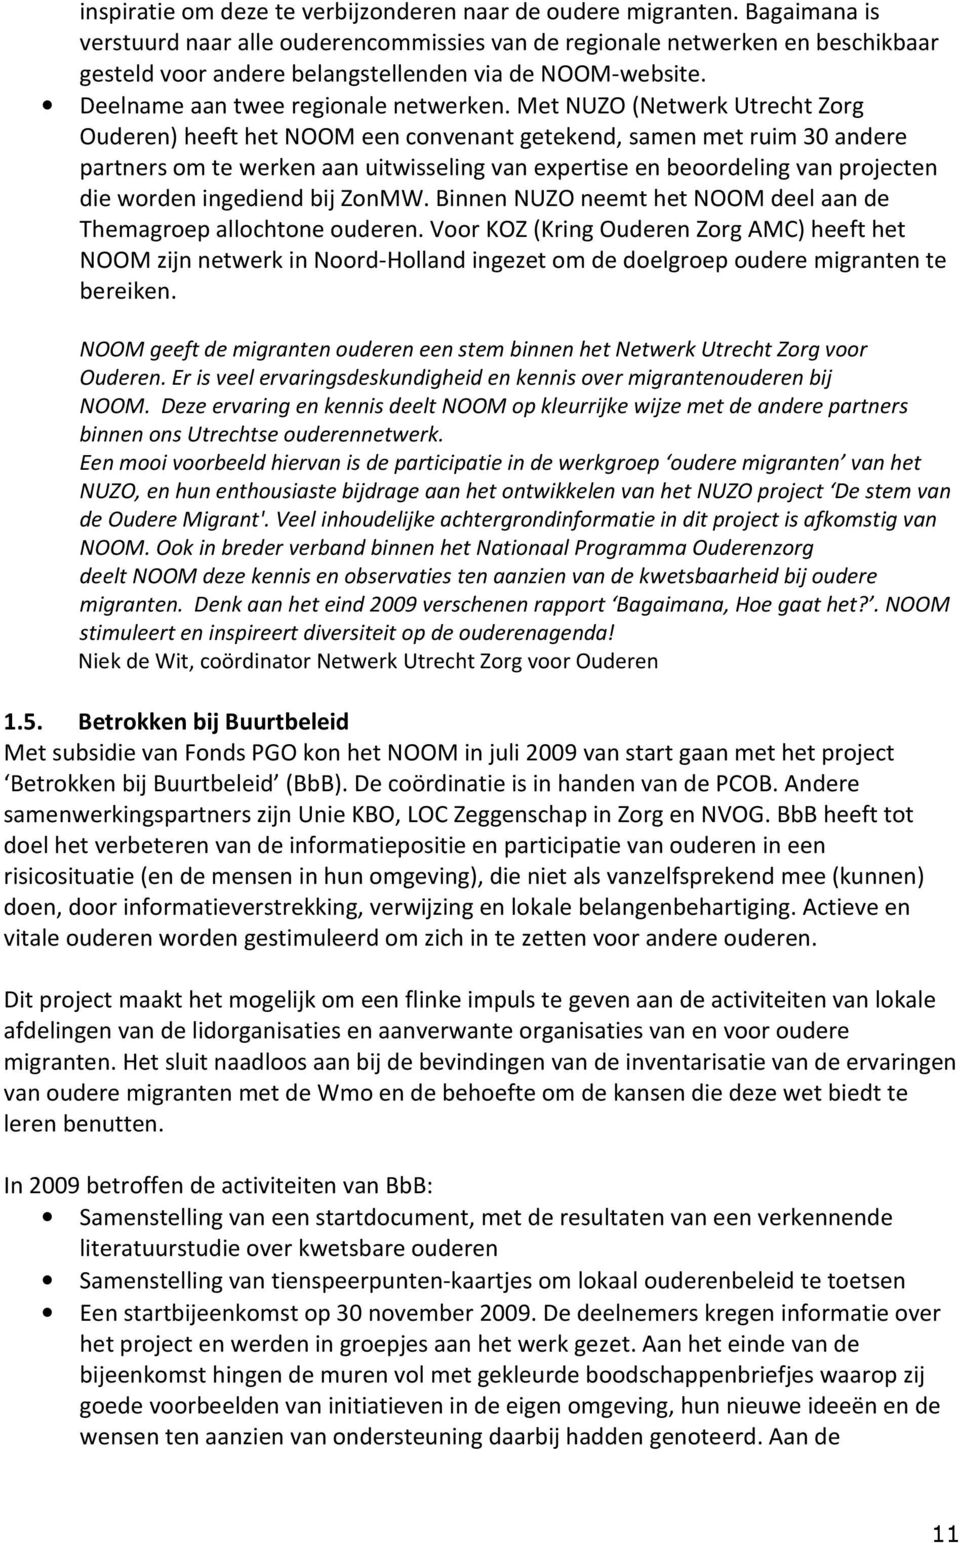 Met NUZO (Netwerk Utrecht Zorg Ouderen) heeft het NOOM een convenant getekend, samen met ruim 30 andere partners om te werken aan uitwisseling van expertise en beoordeling van projecten die worden